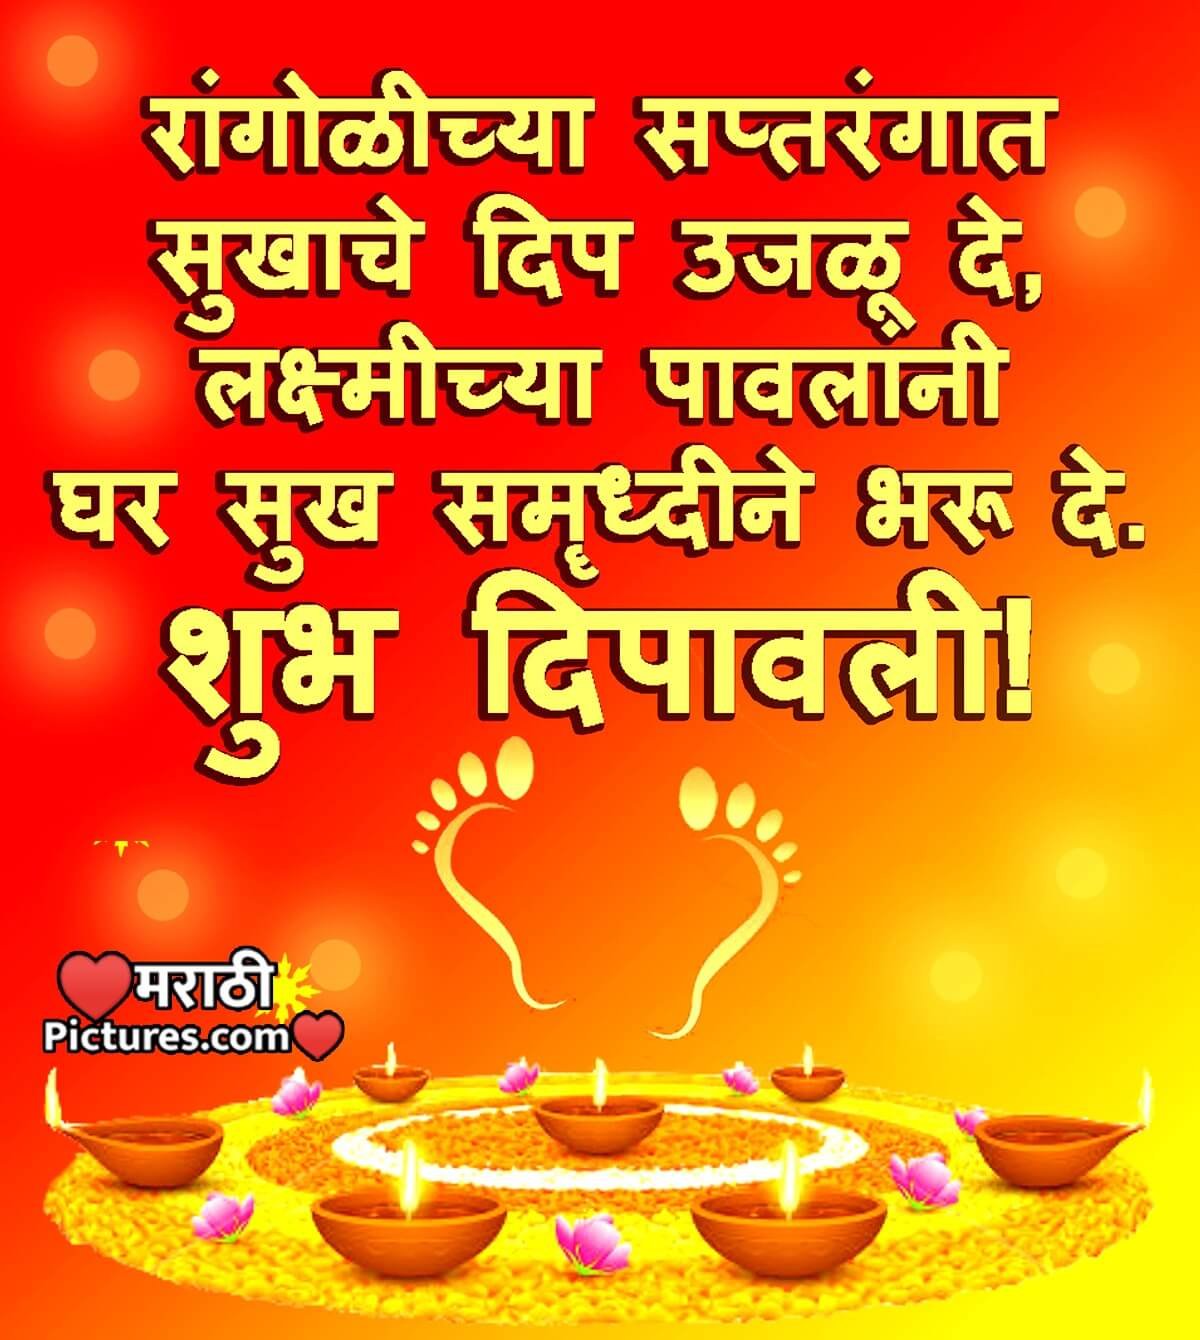 Shubh Deepawali Marathi Wishes